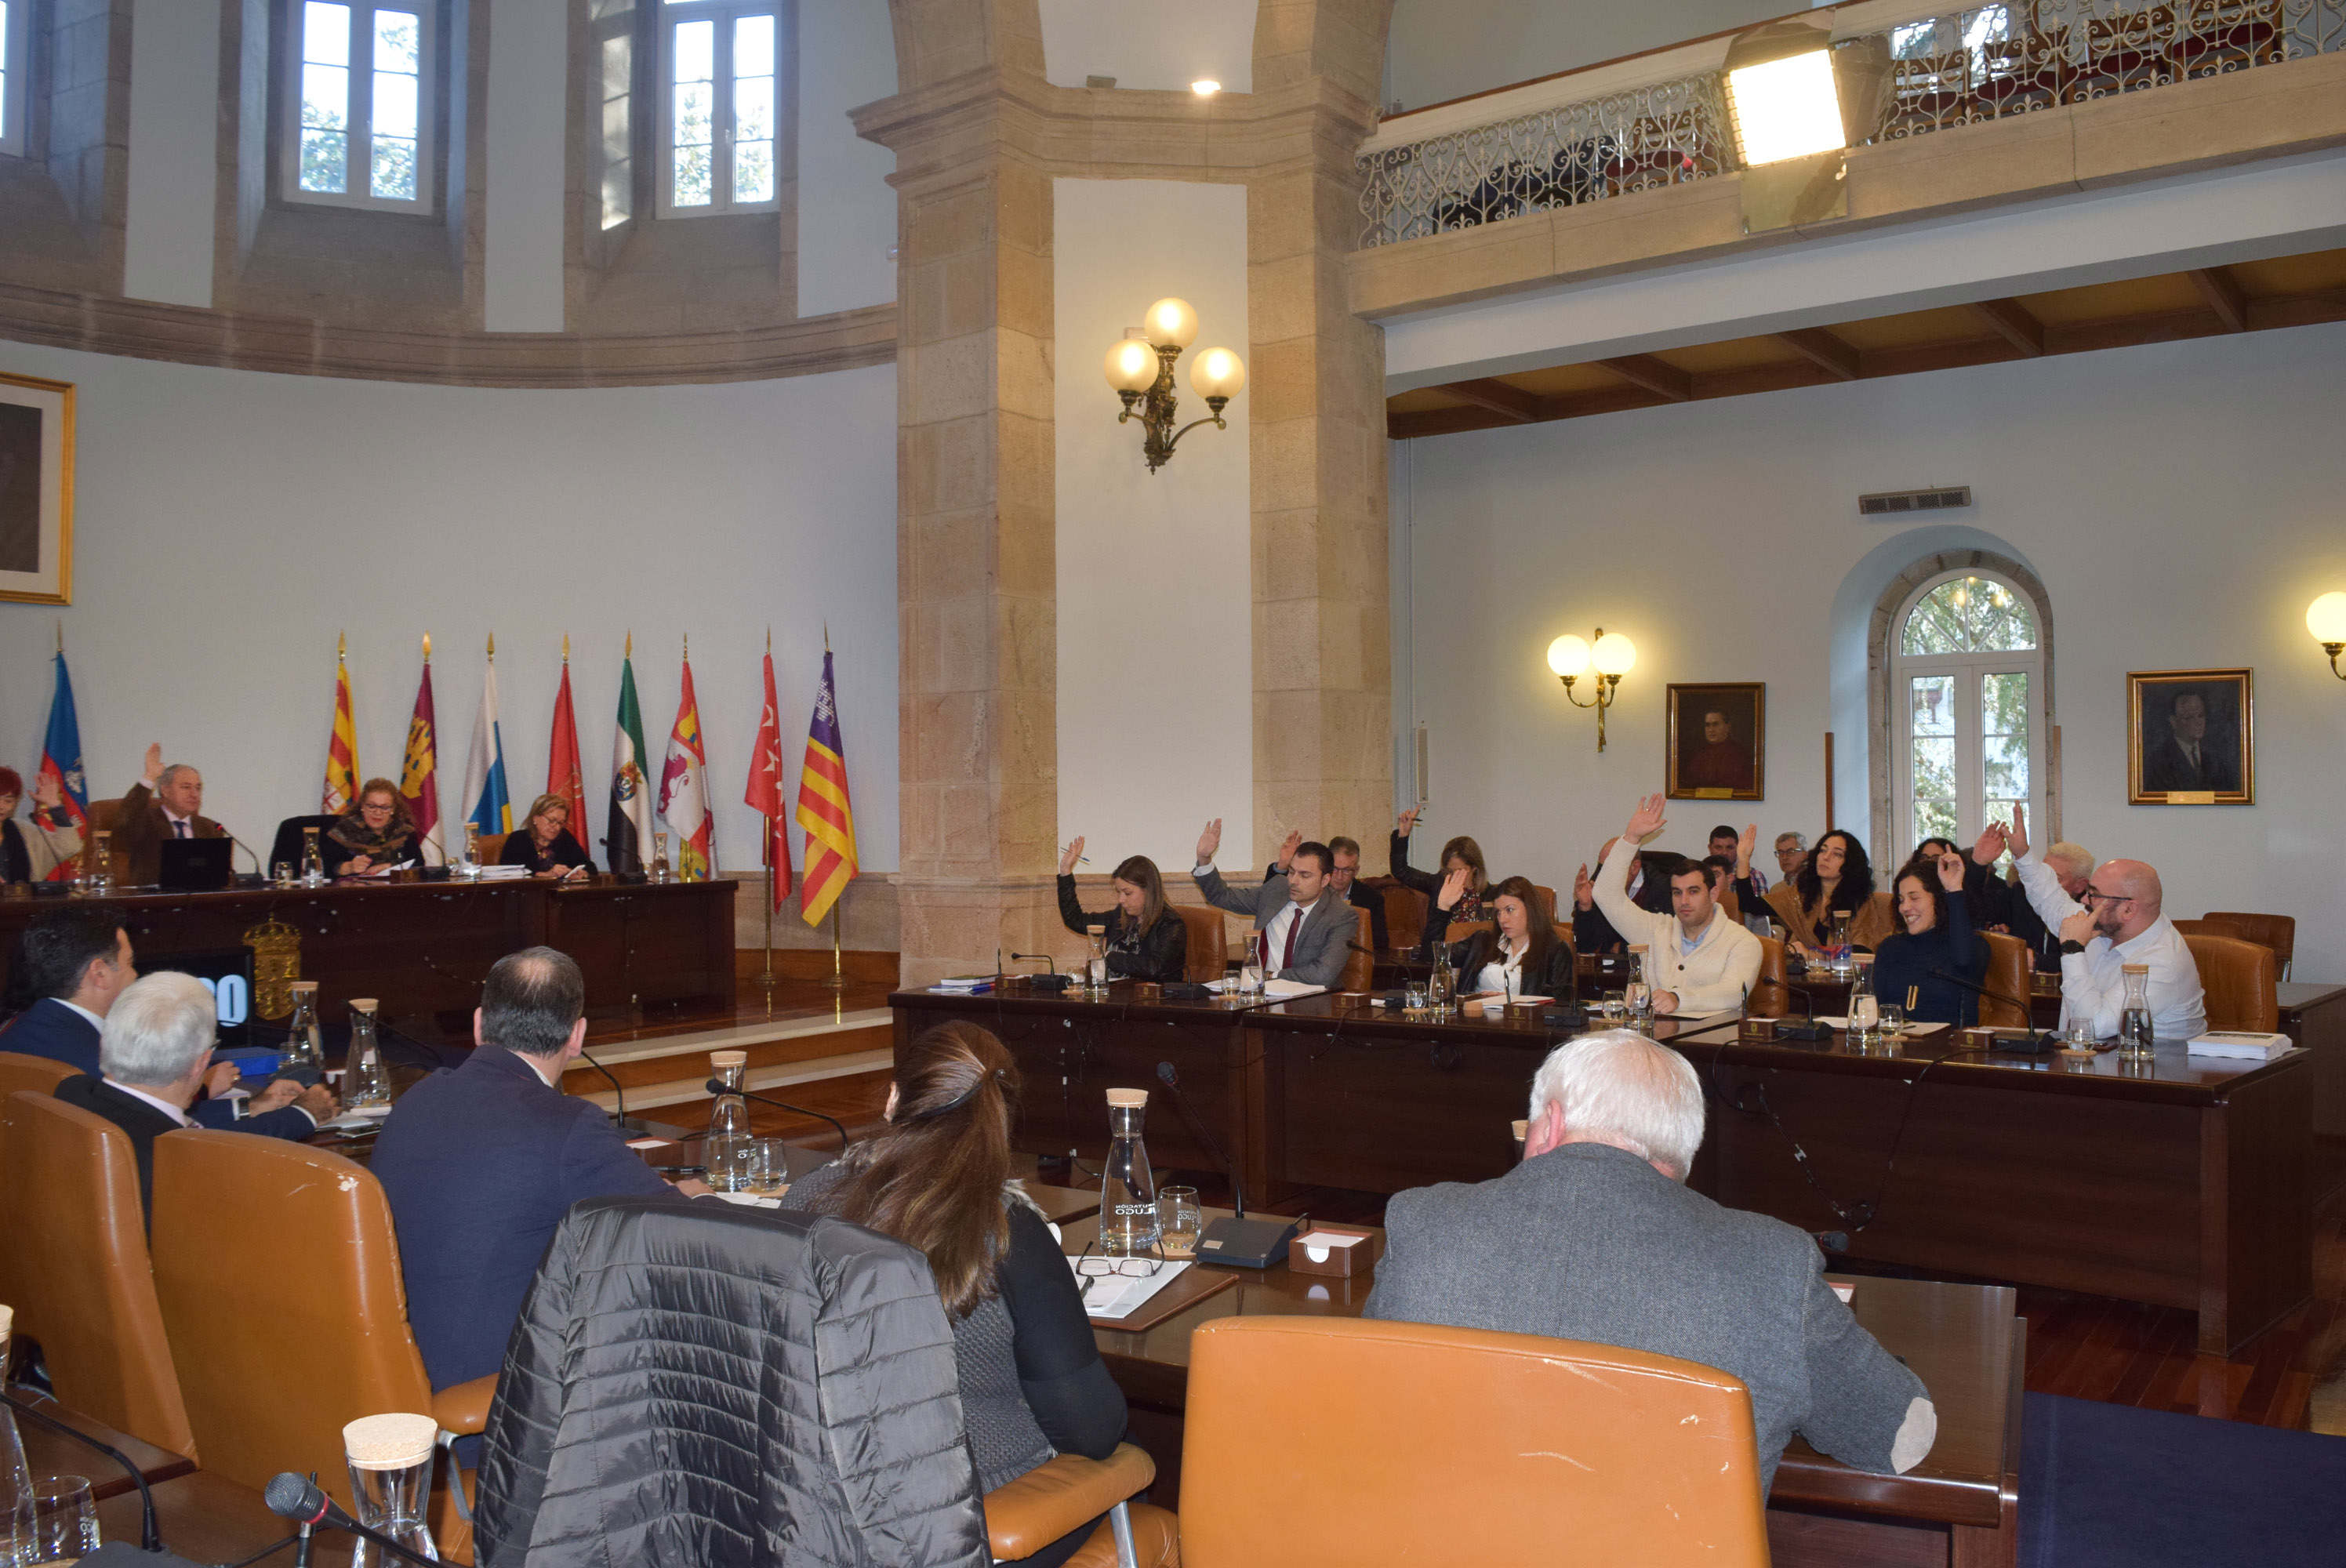 Os Orzamentos 2020 da Deputación de Lugo aplican “a mellor política demográfica: dotar de servizos á cidadanía e favorecer o emprego sostible”